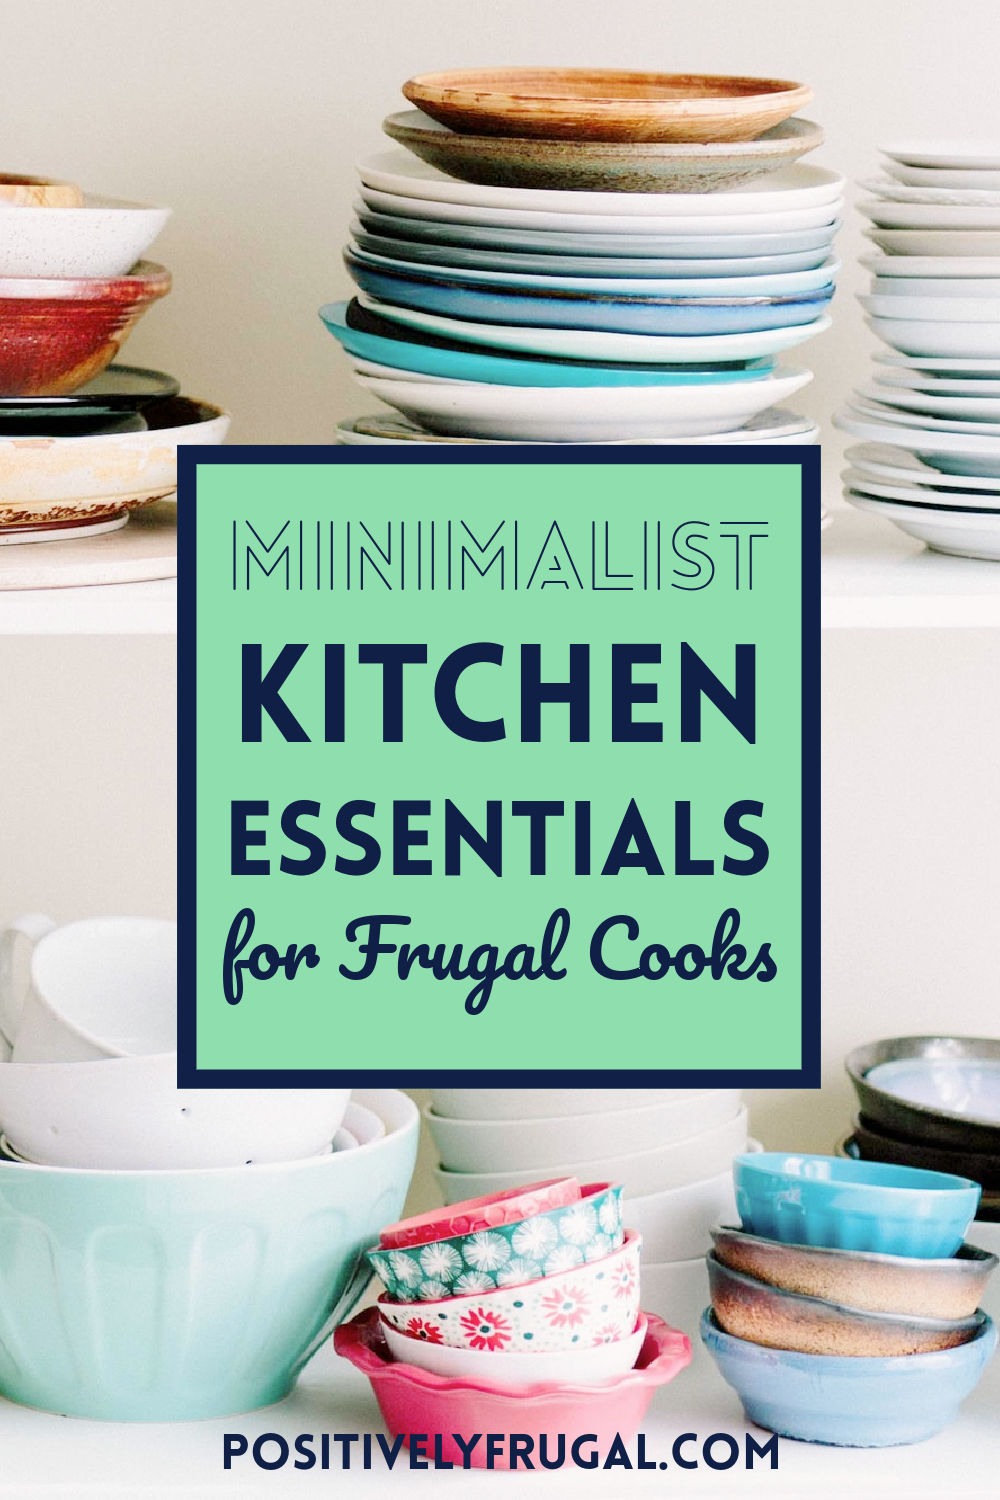 Minimalist Kitchen Essentials Frugal Cooks by PositivelyFrugal.com